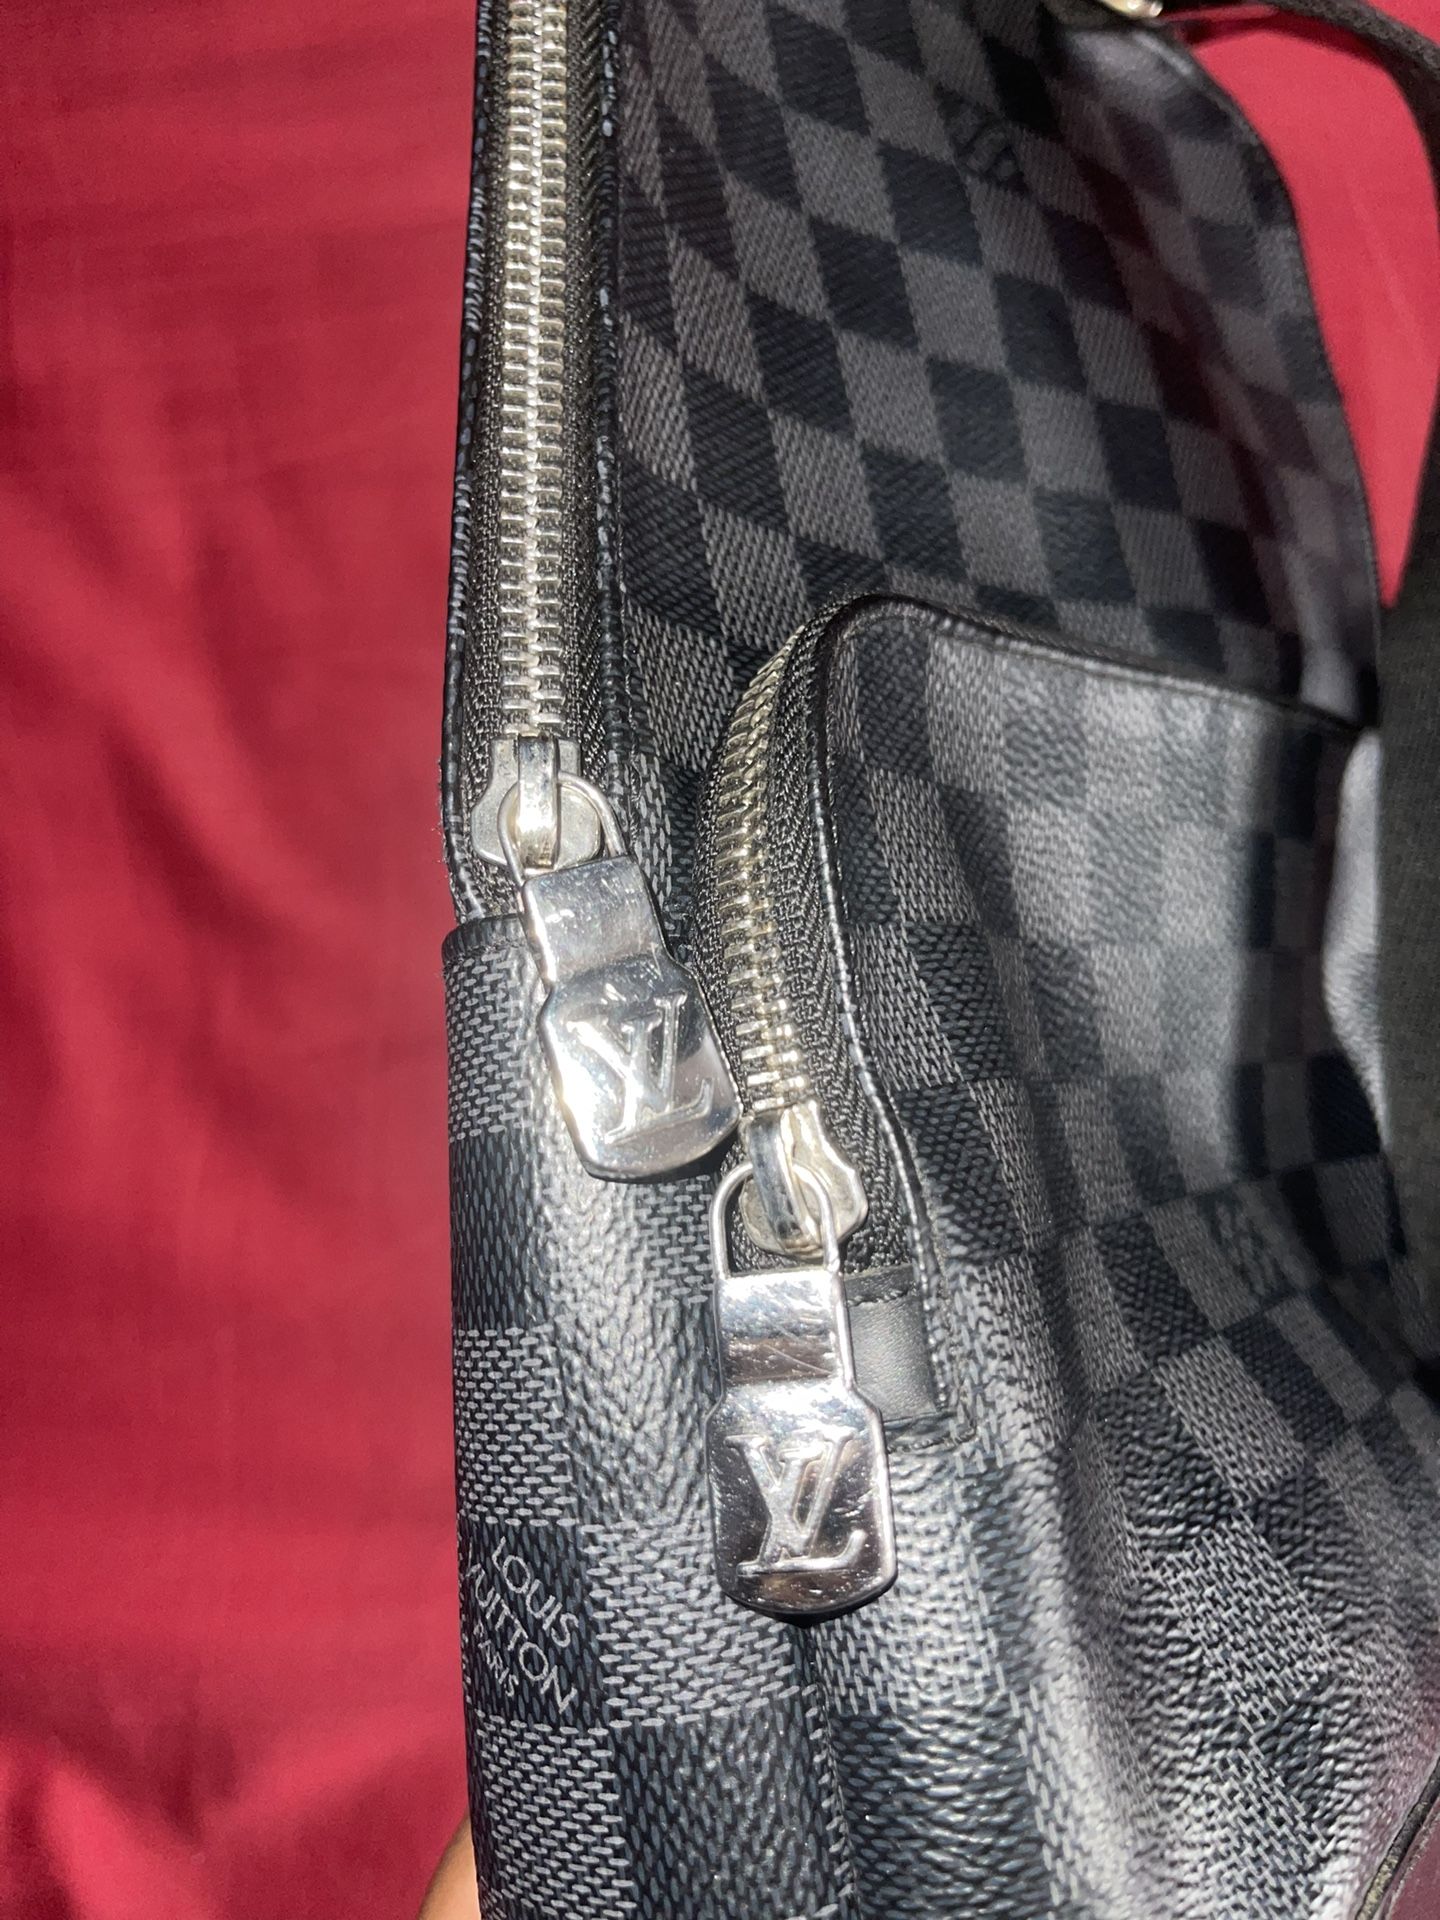 lv sling bag for women｜TikTok Search